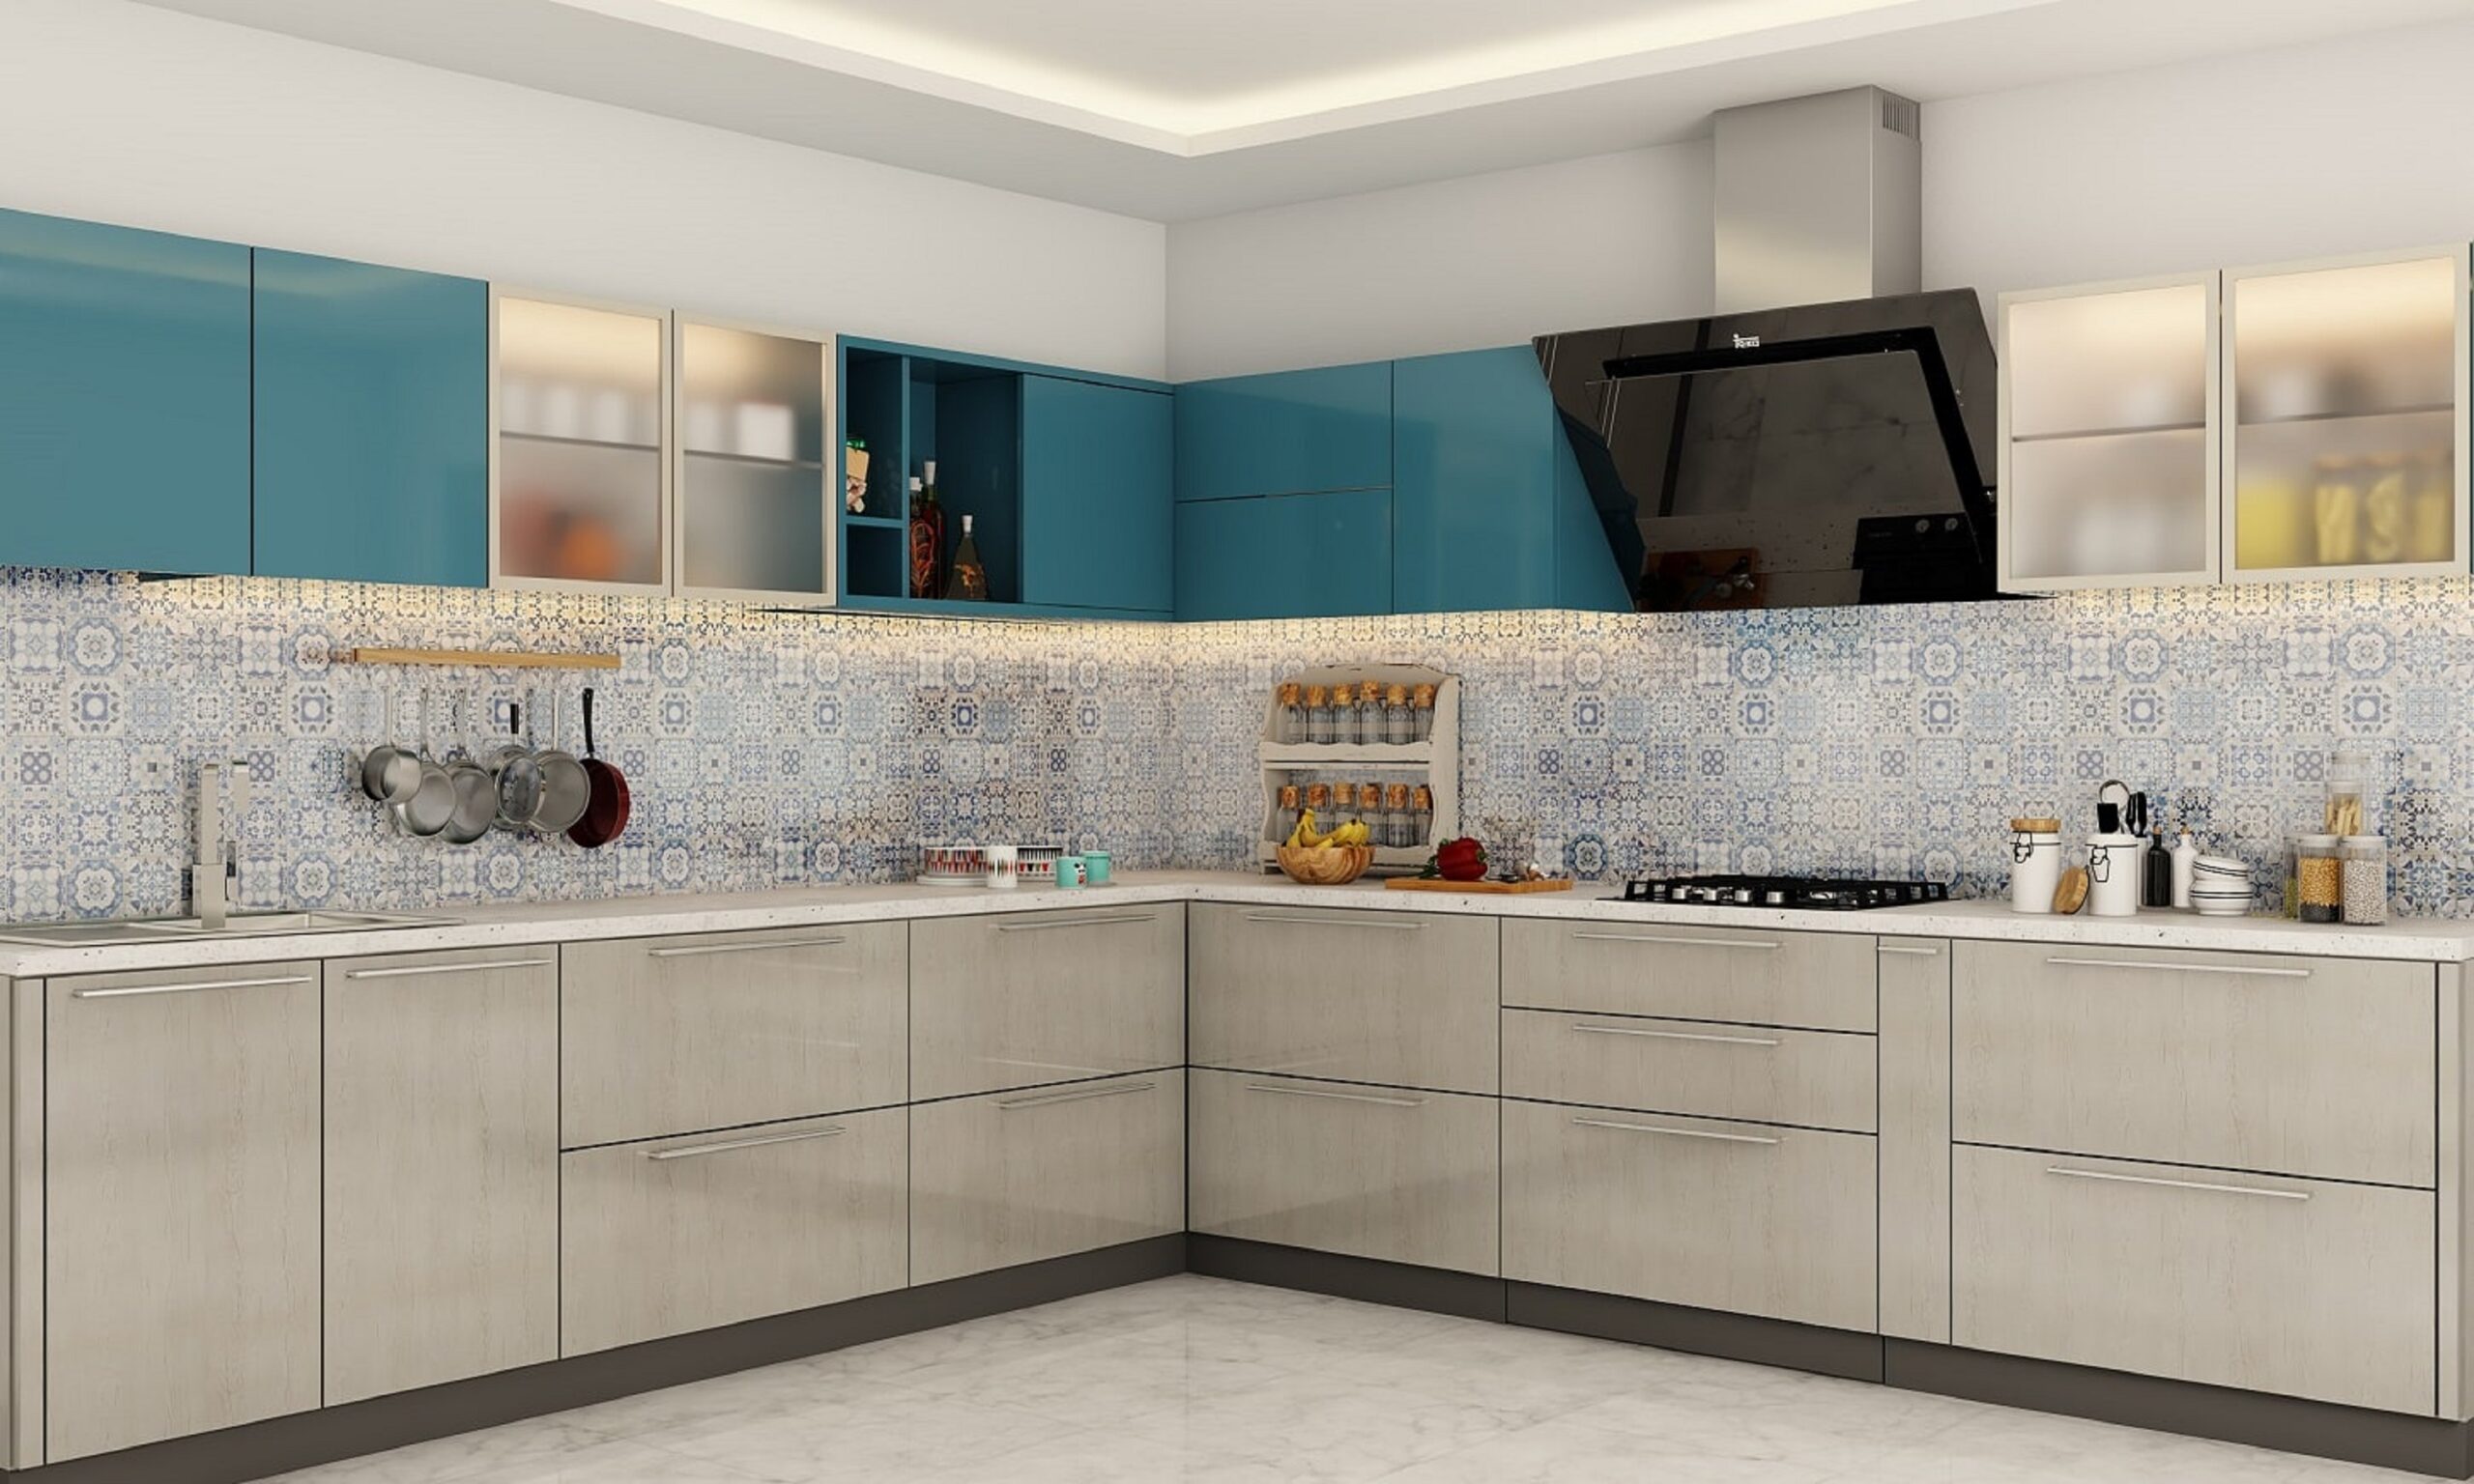 modular kitchen designing services